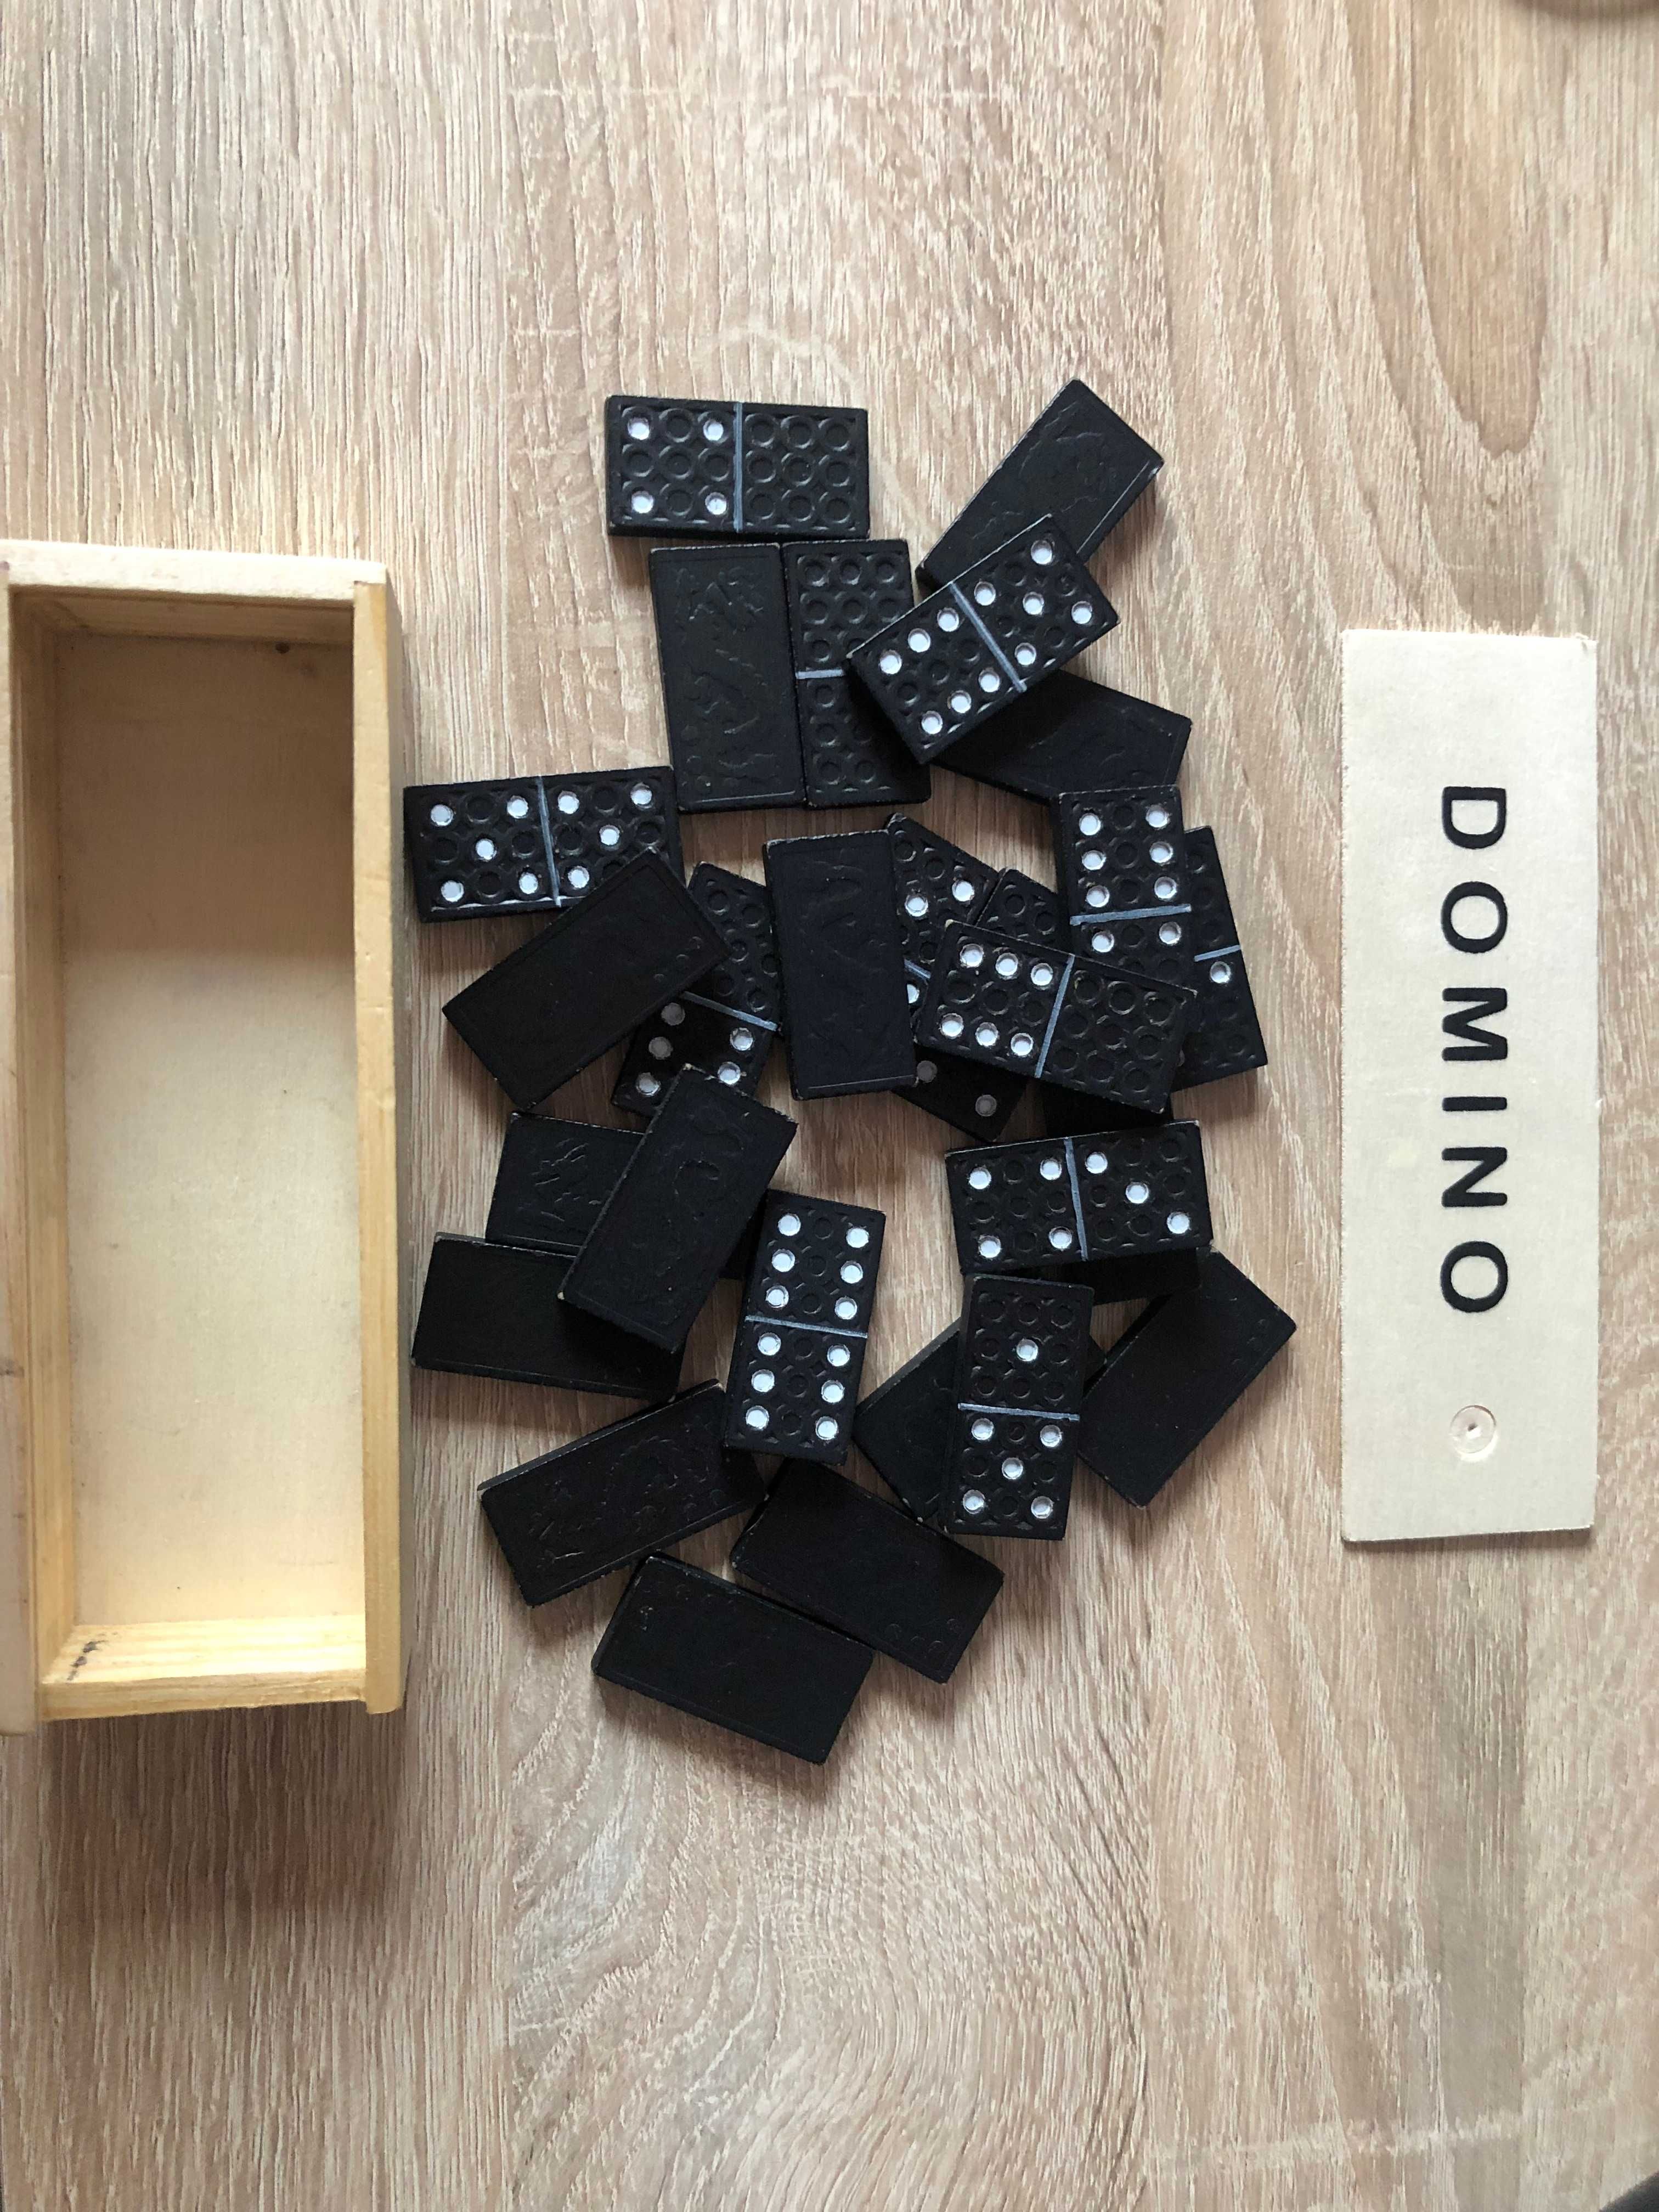 Domino. Zwykłe czarne domino